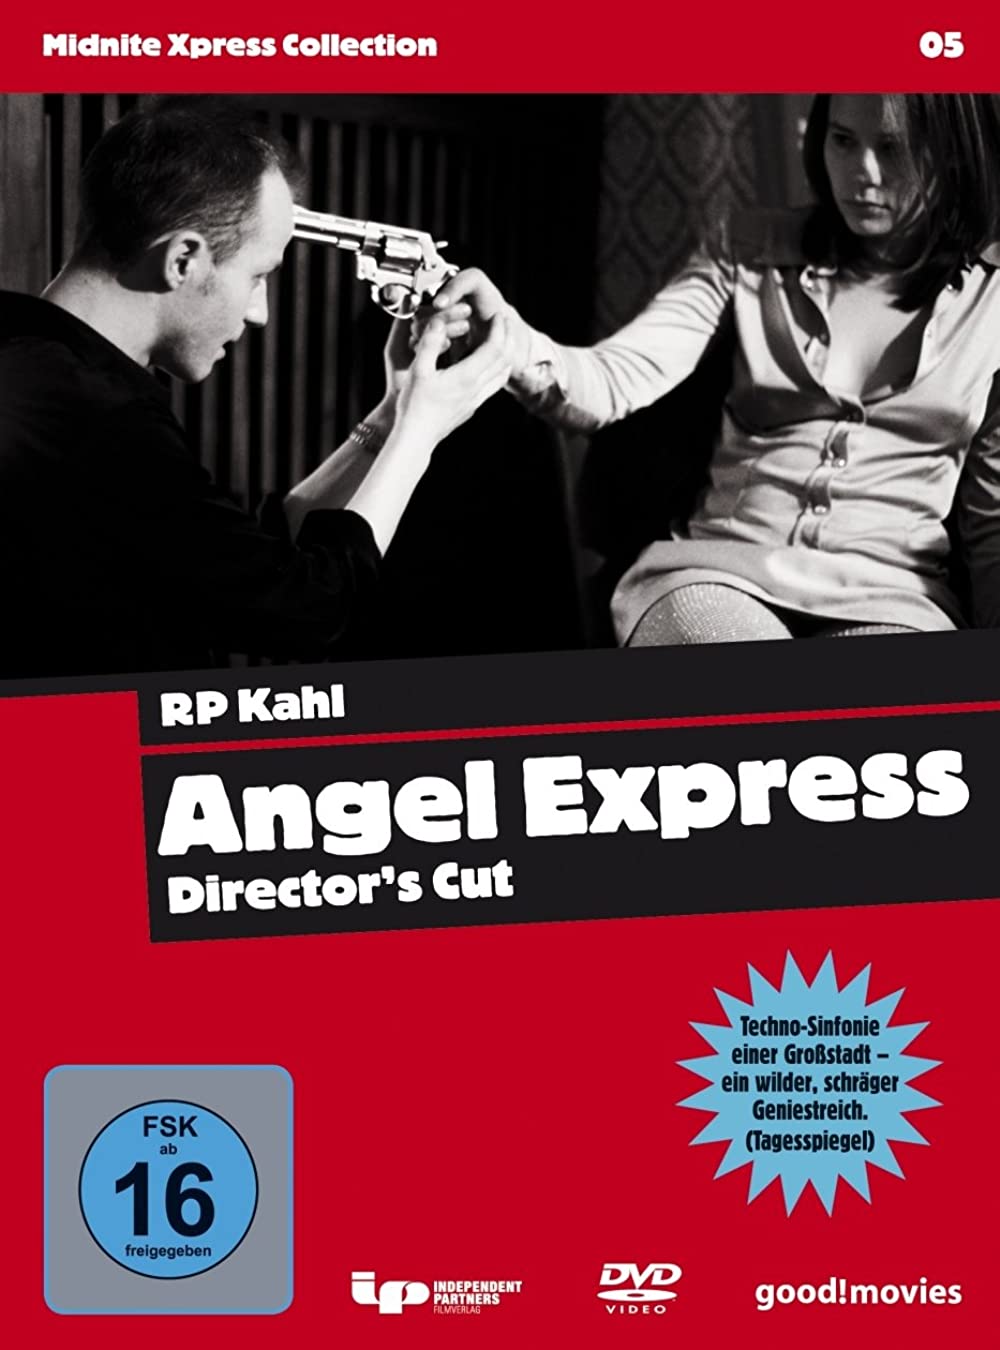 Filmbeschreibung zu Angel Express